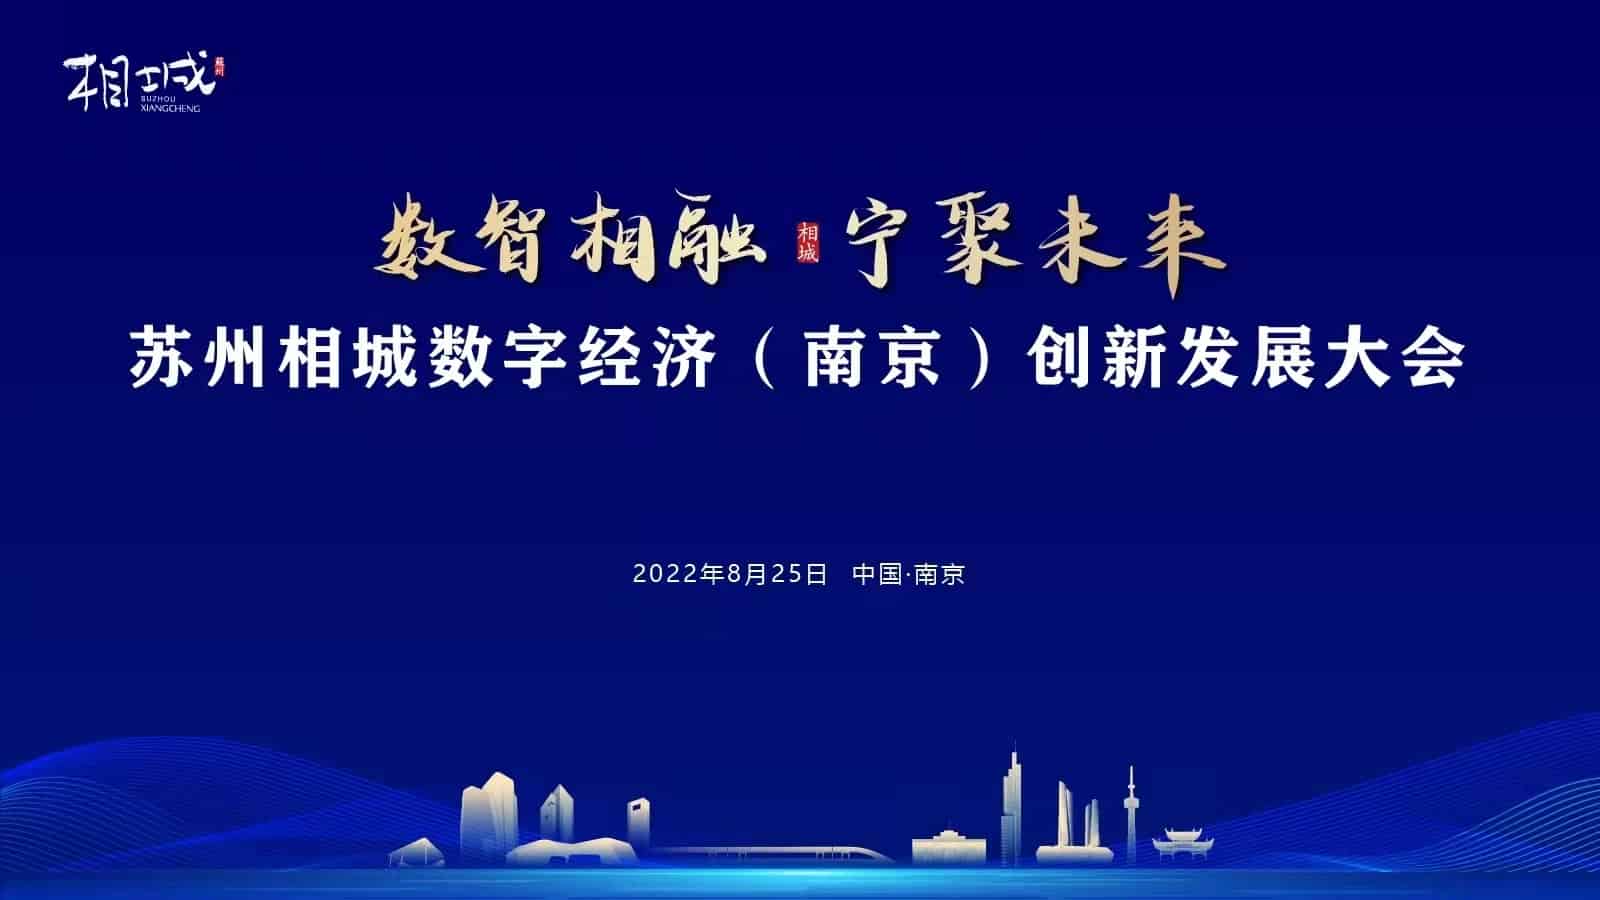 “数智相融，宁聚未来” 苏州相城数字经济（南京）创新发展大会